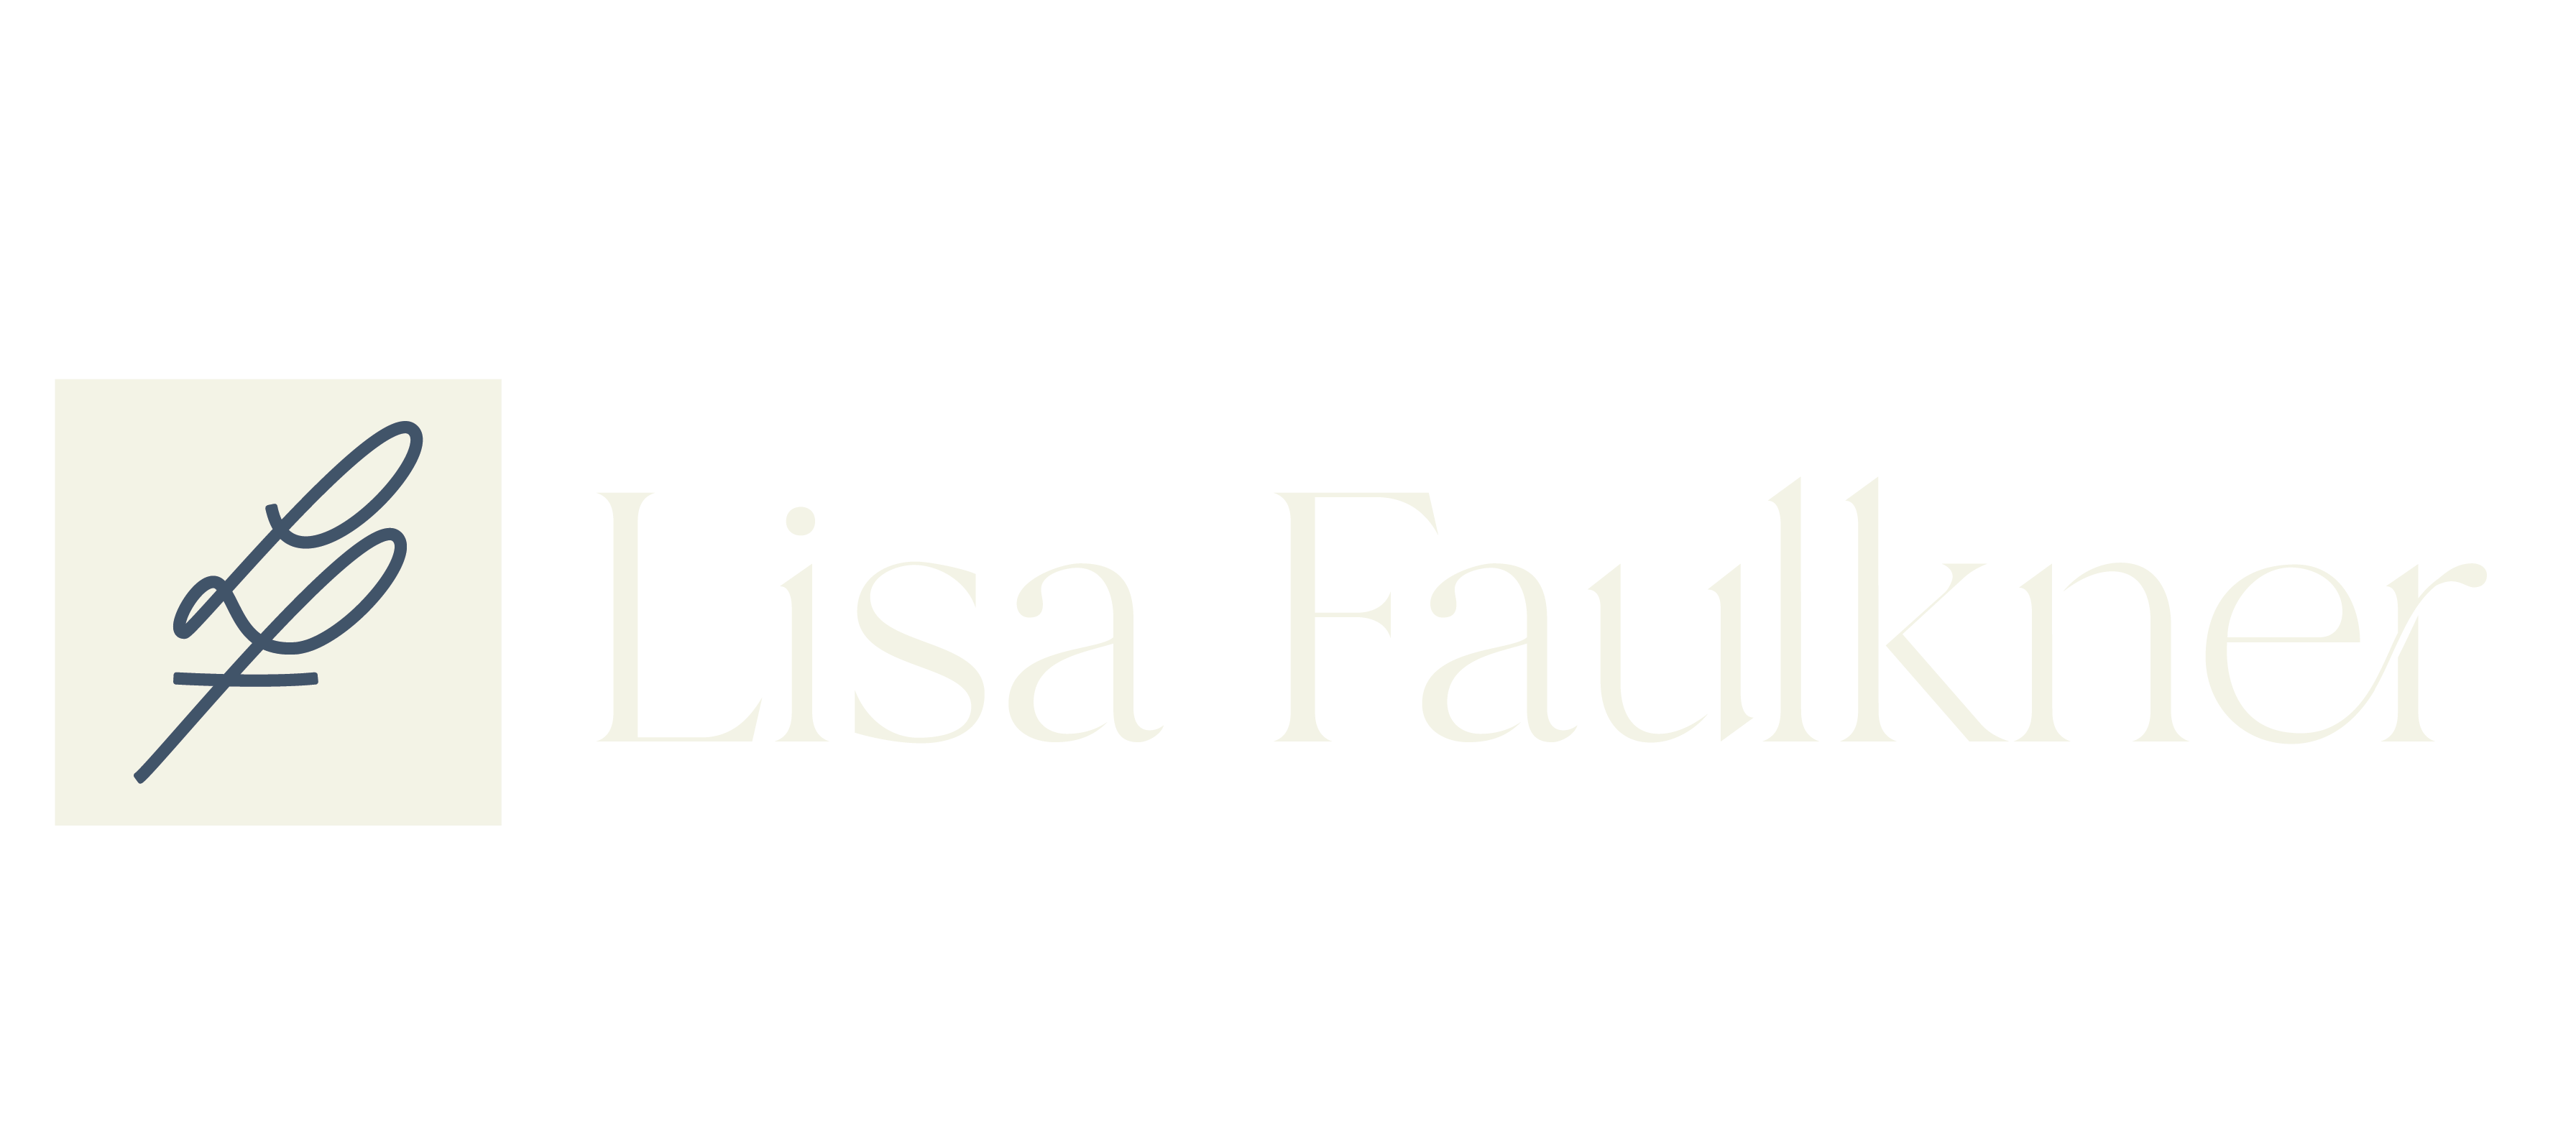 Lisa Faulkner